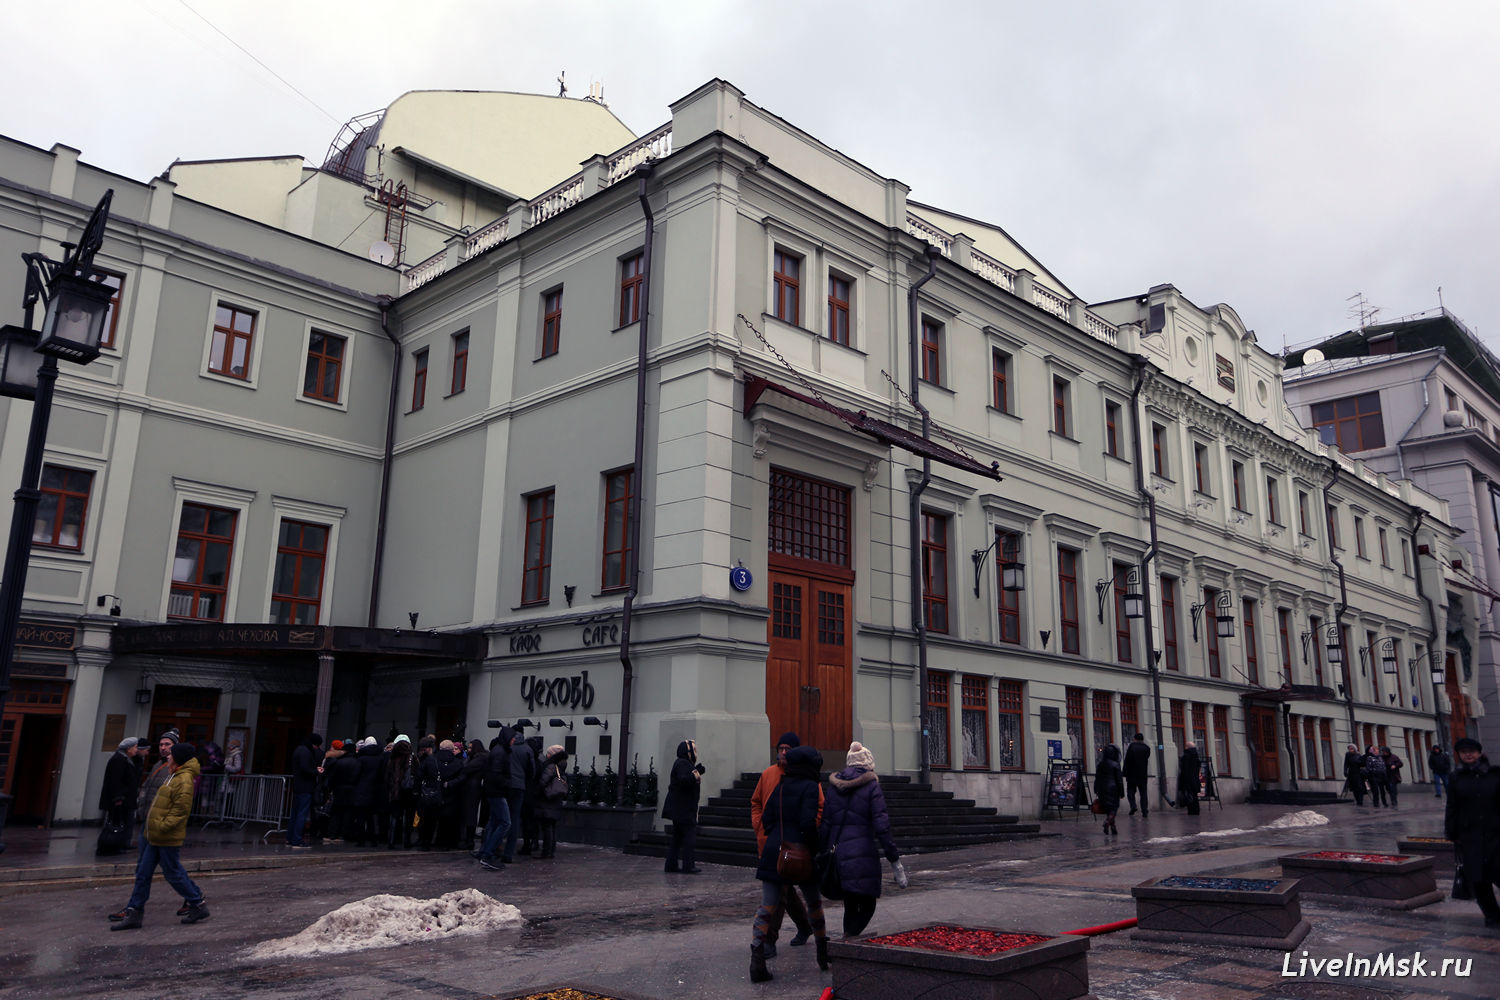 Московский художественный театр им. Чехова, фото 2014 года